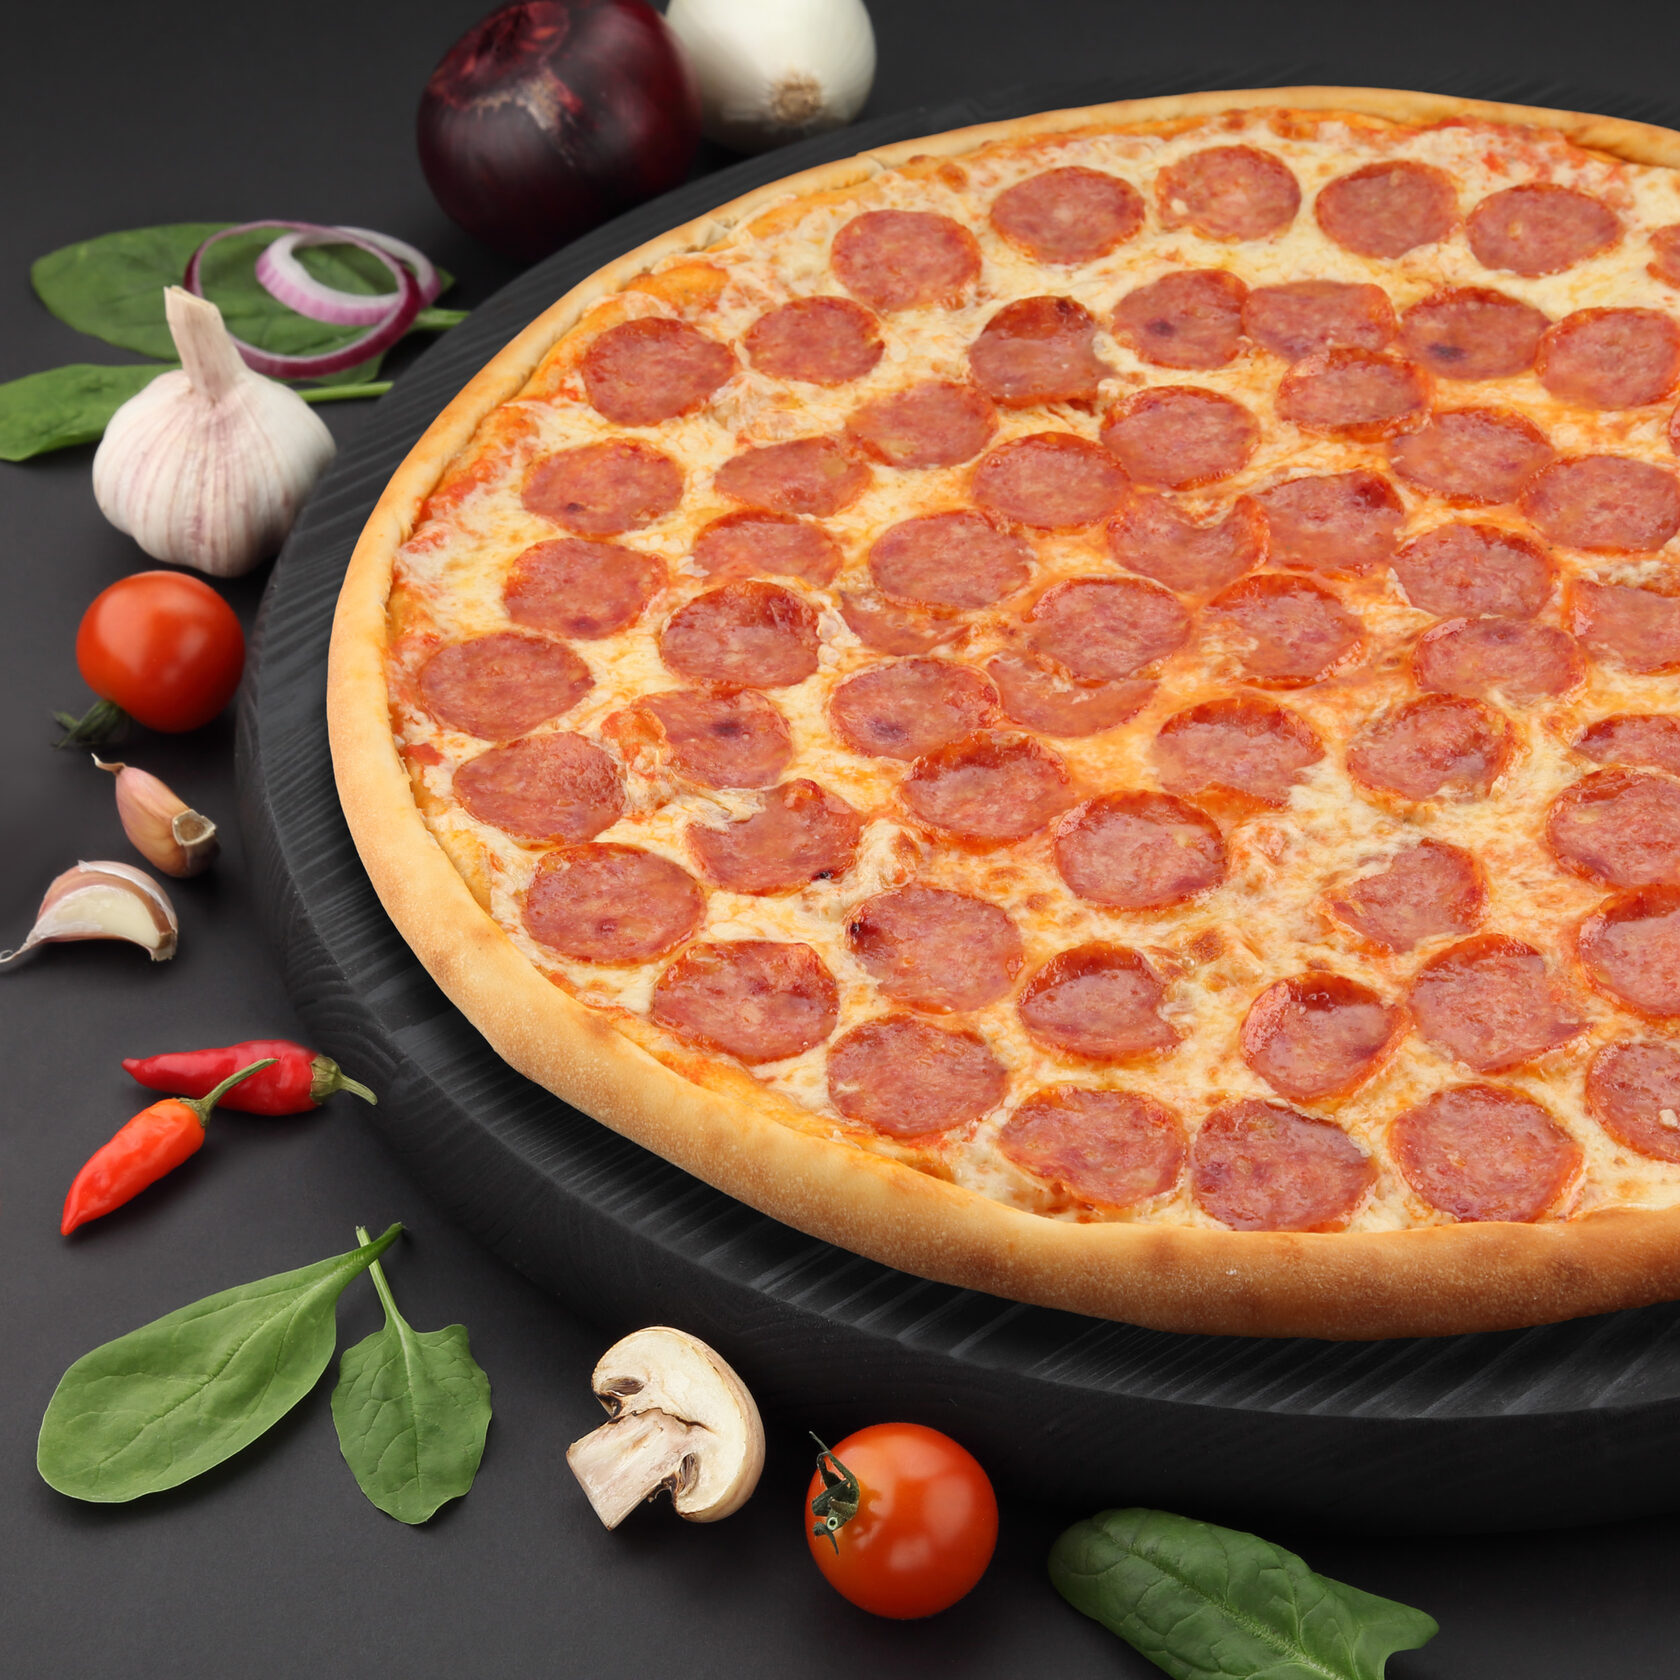 список ингредиентов для пиццы пепперони фото 96